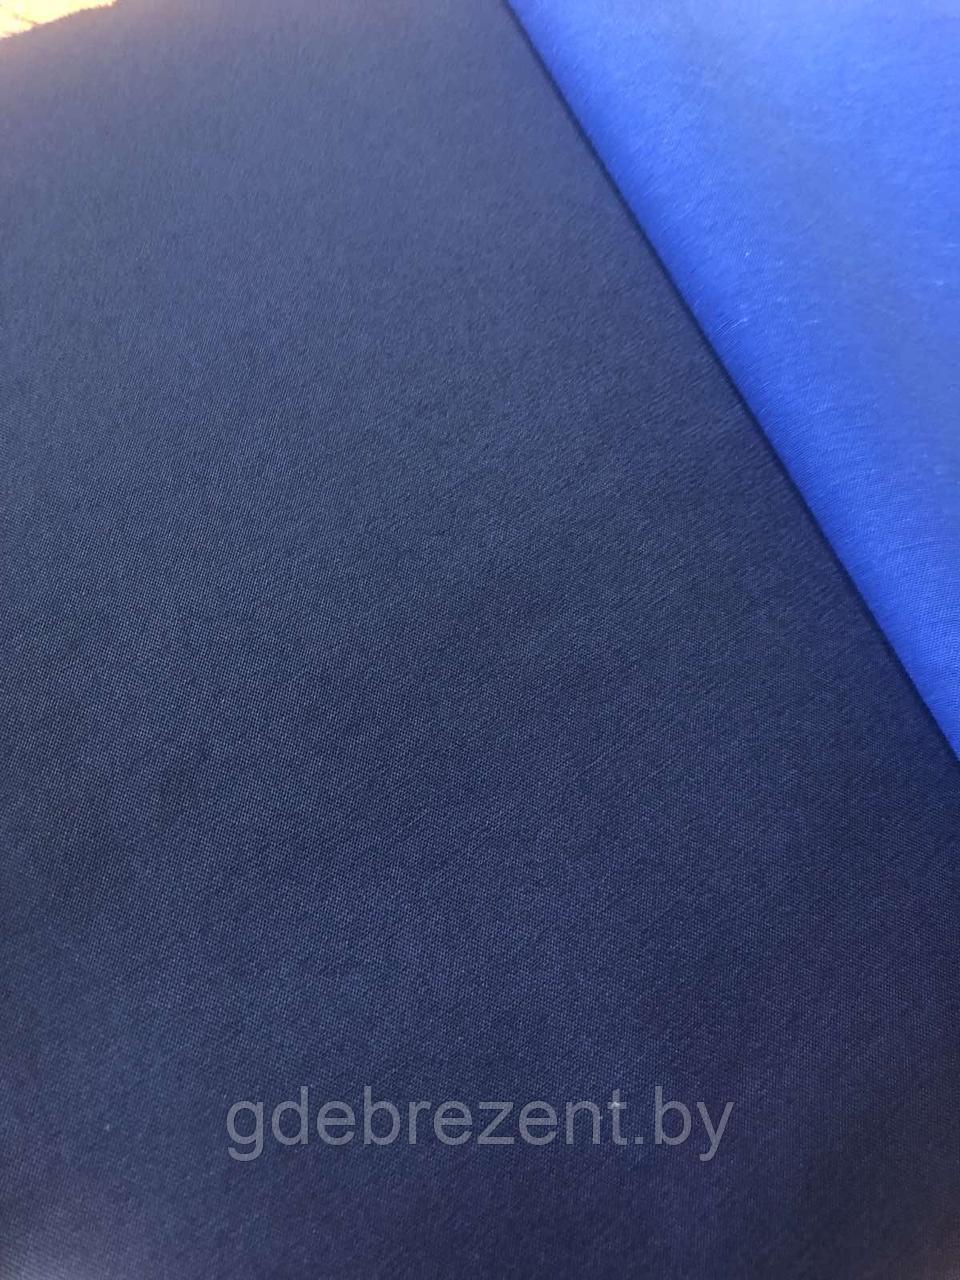 Ткань Заря (синий)